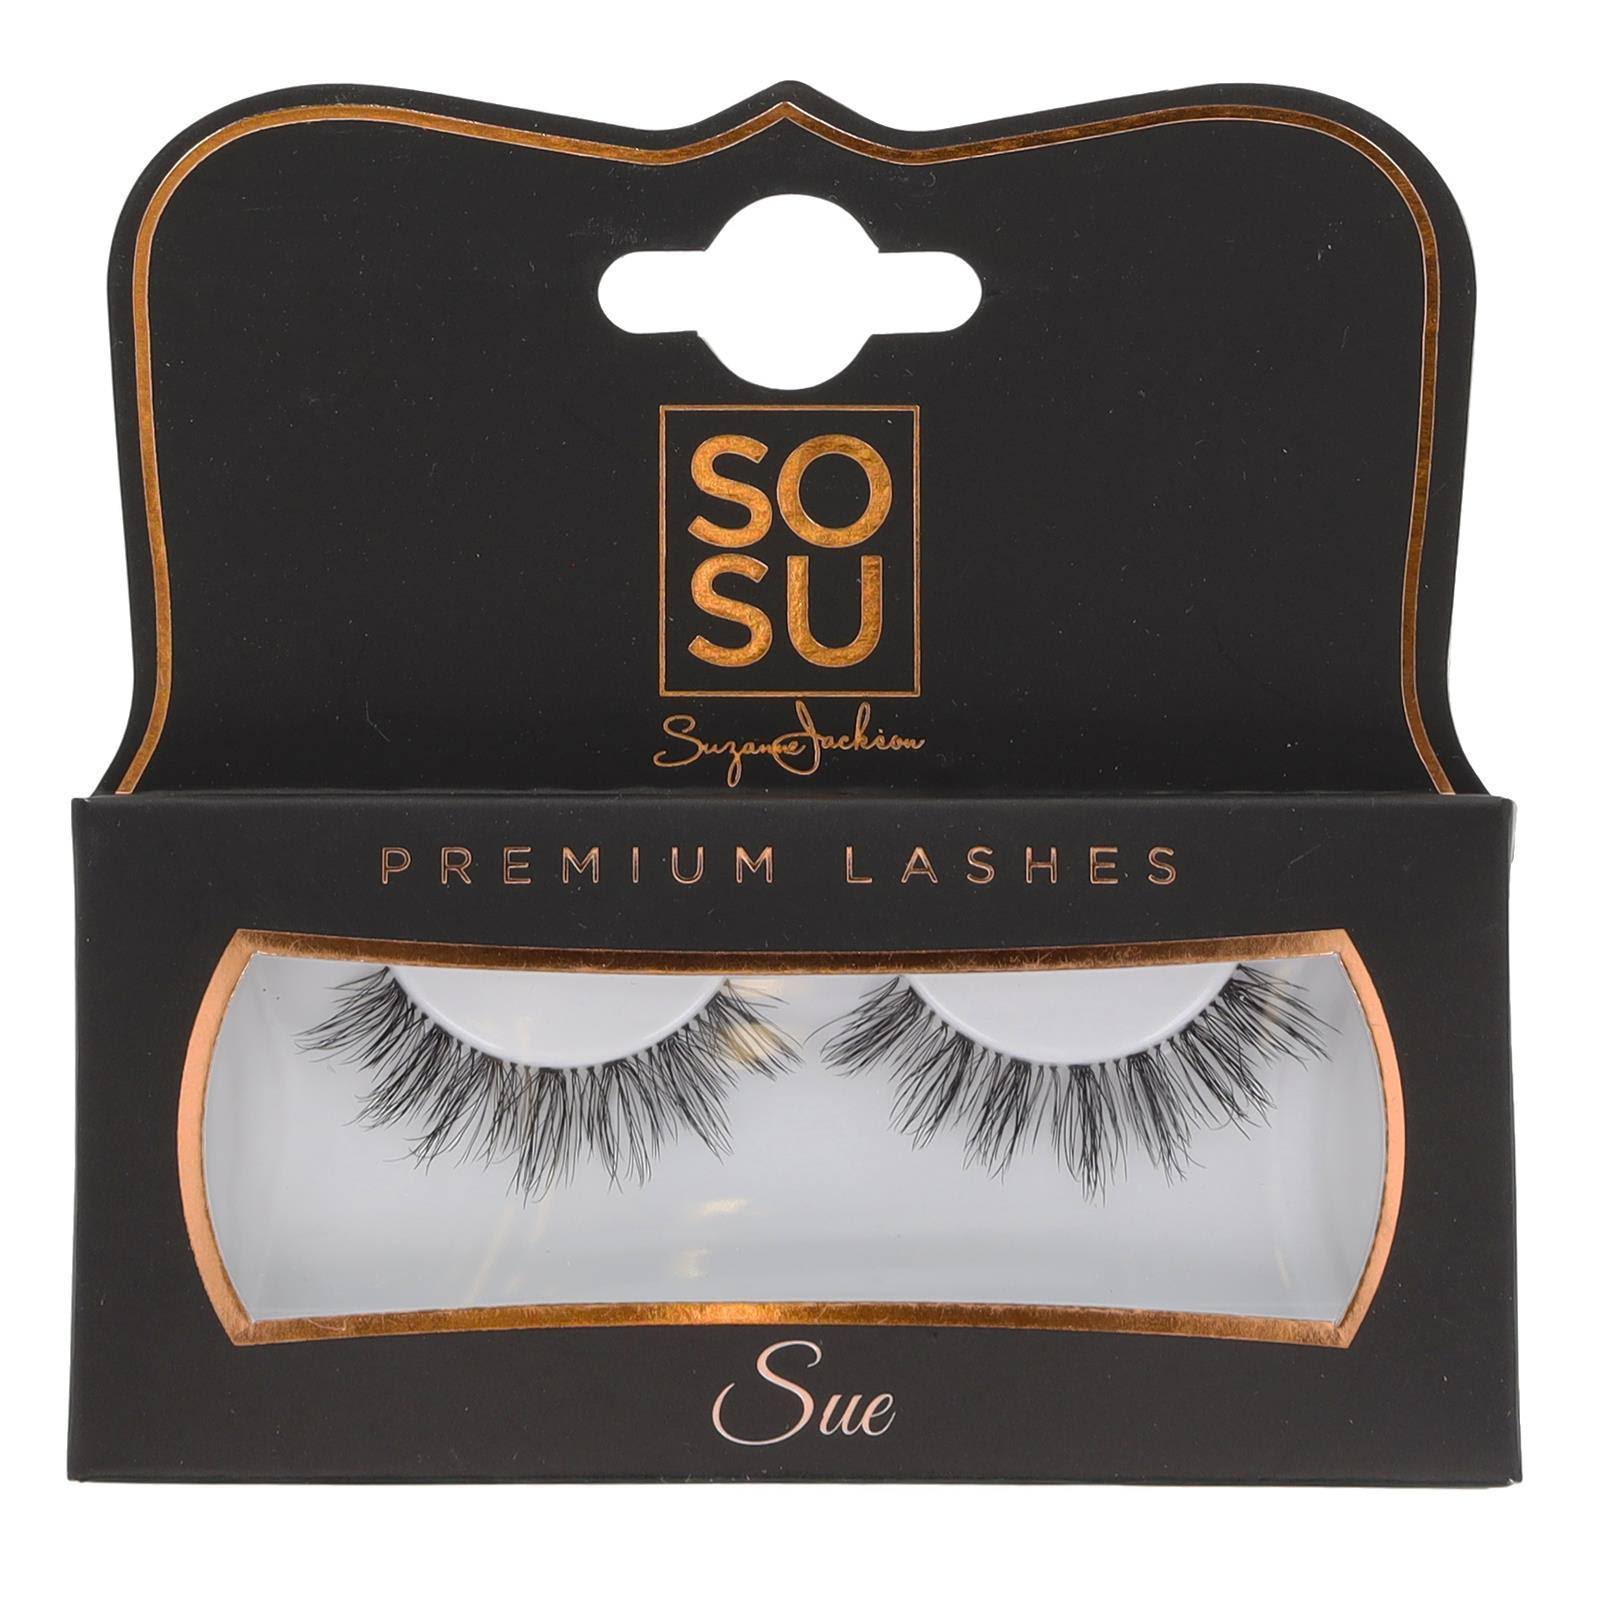 SOSU Premium Lashes - Sue - False Eyelashes